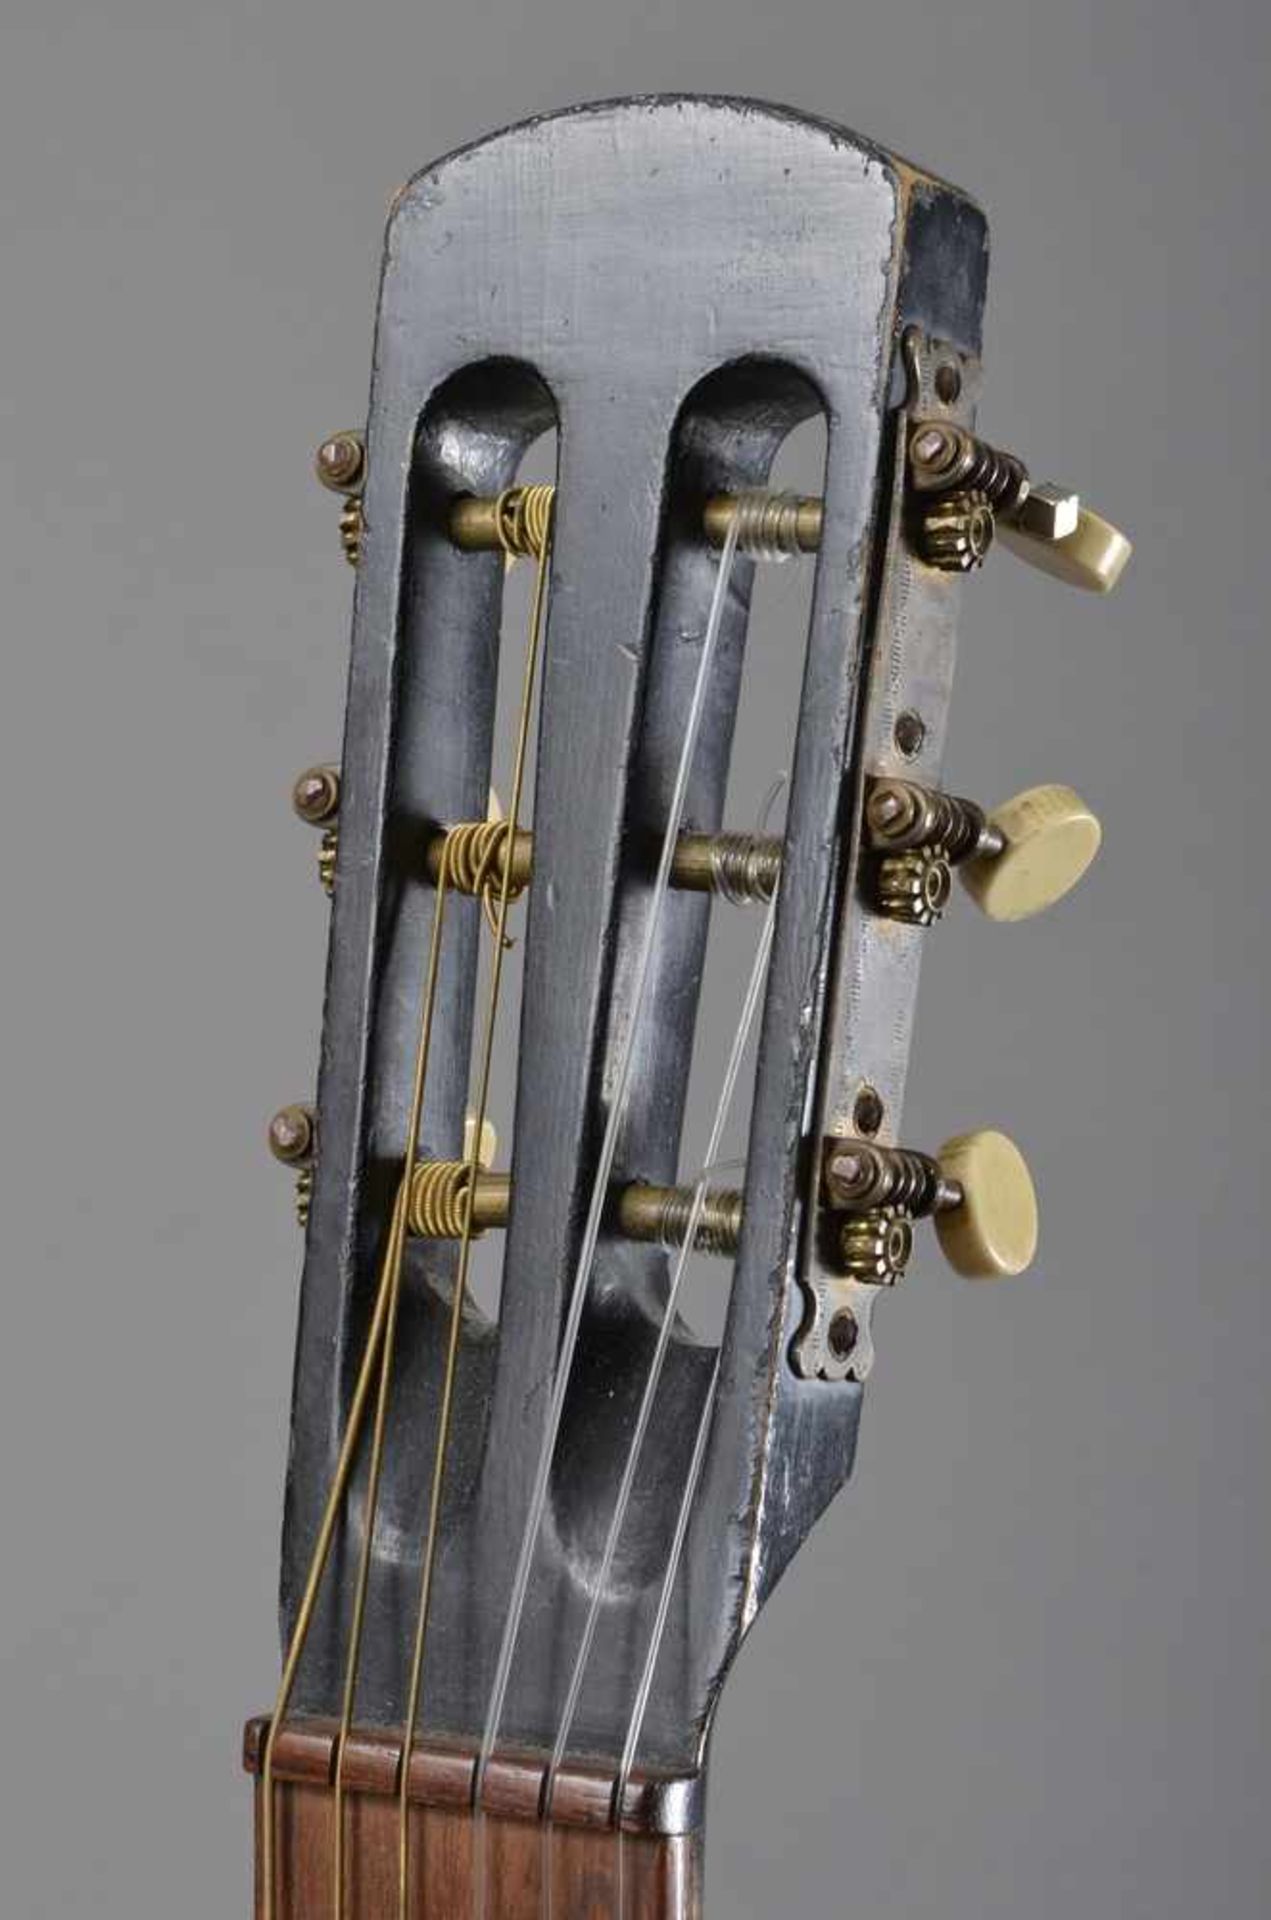 Historische Gitarre, Mensur 62cm, Gesamtlänge 93cm, Saitenhöhe 4-5mm, ca. 100 Jahre, spielbar - Image 4 of 8